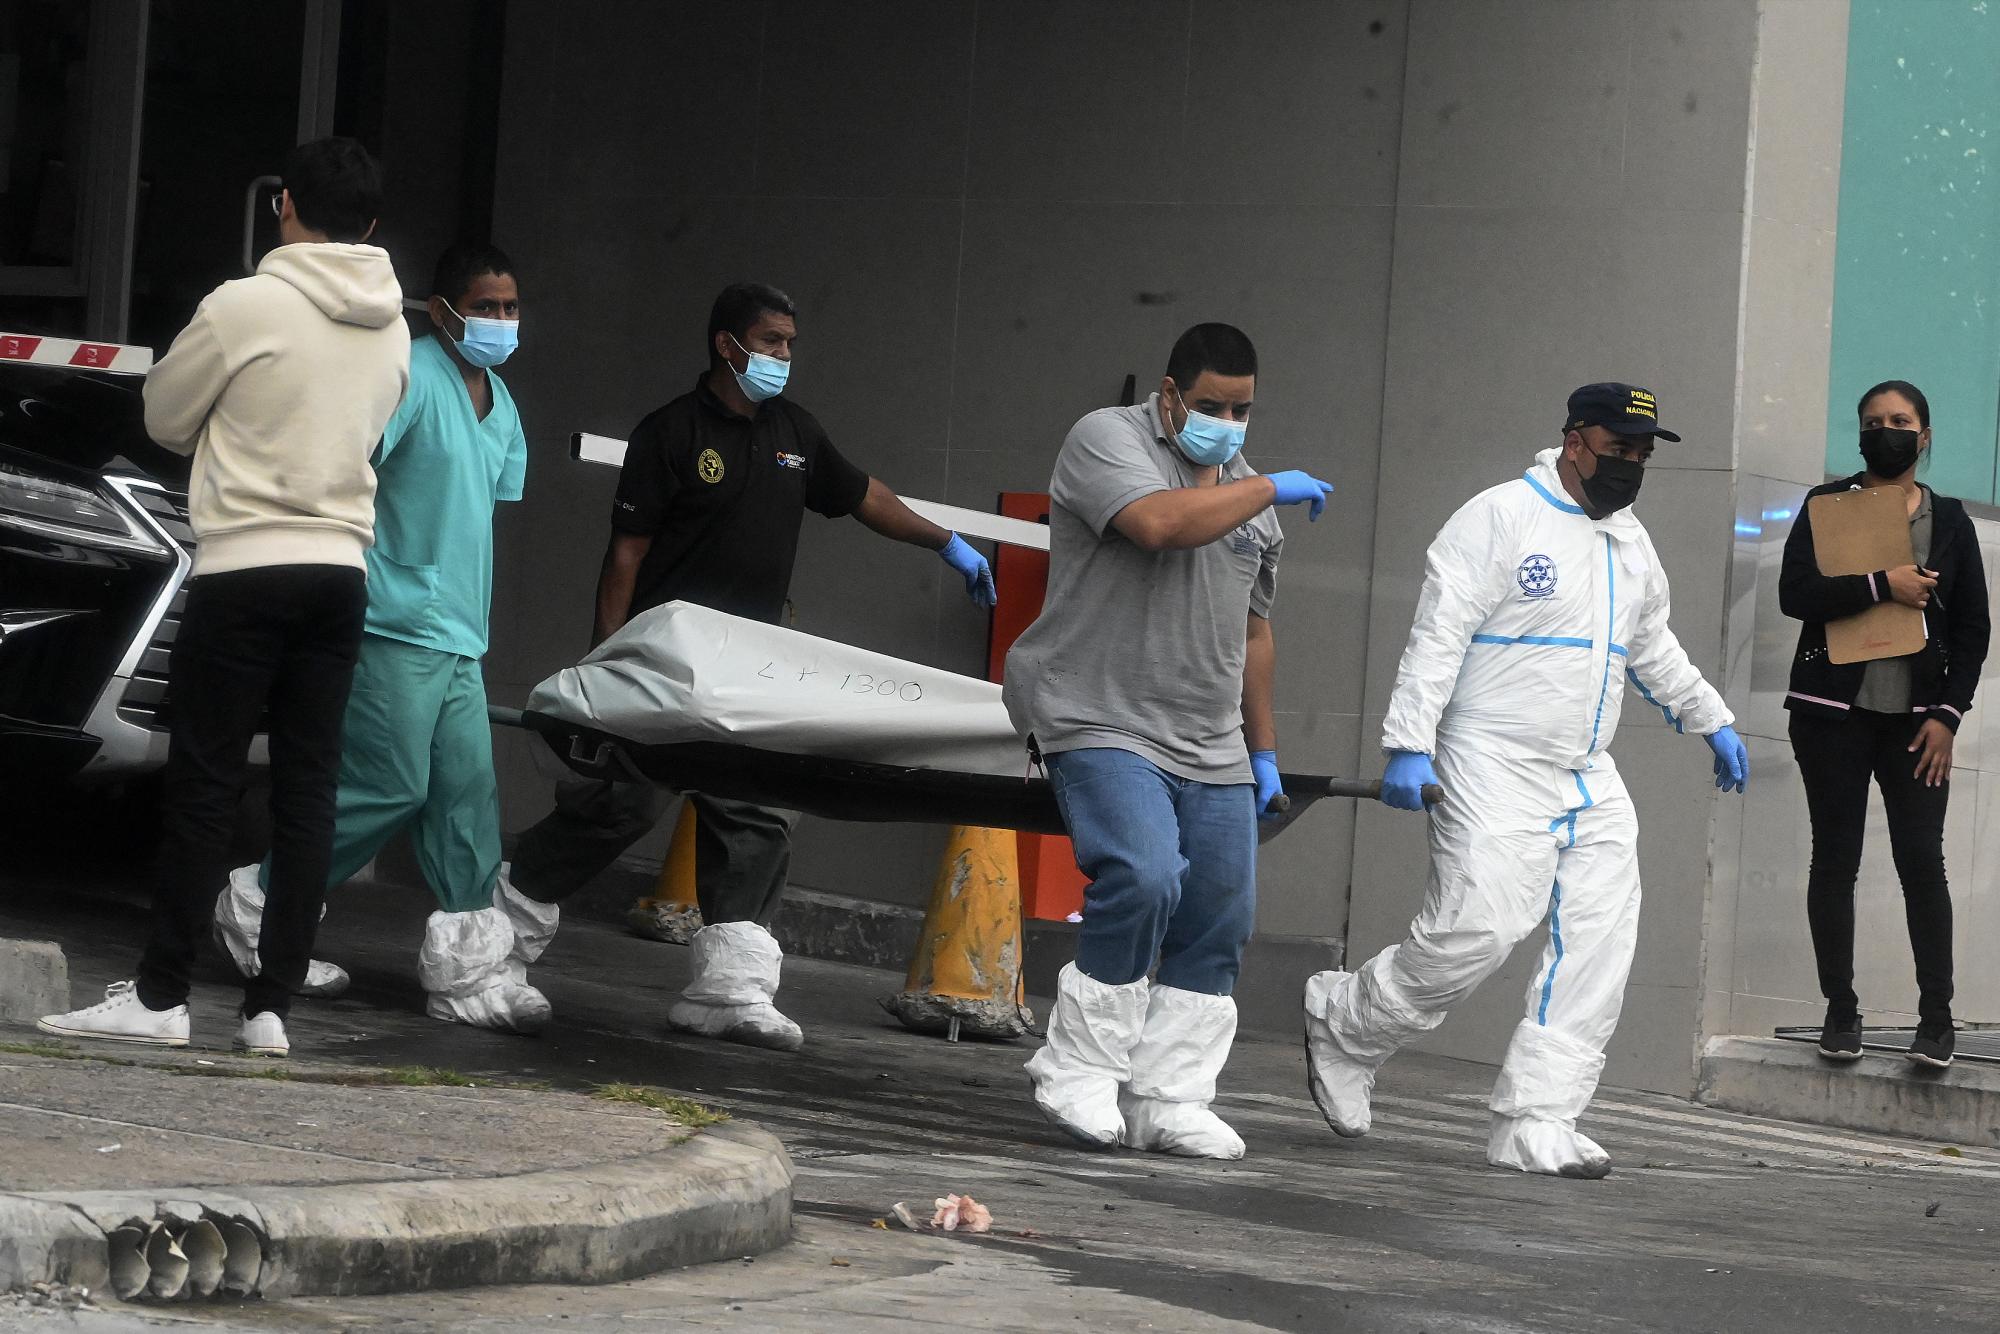 Elementos de Investigación Criminal y Policía Nacional trasladan un cadáver en la escena del crimen donde Said Lobo Bonilla, hijo del expresidente hondureño Porfirio Lobo Sosa (2010-2014), fue asesinado en Tegucigalpa este jueves 14 de julio de 2022.